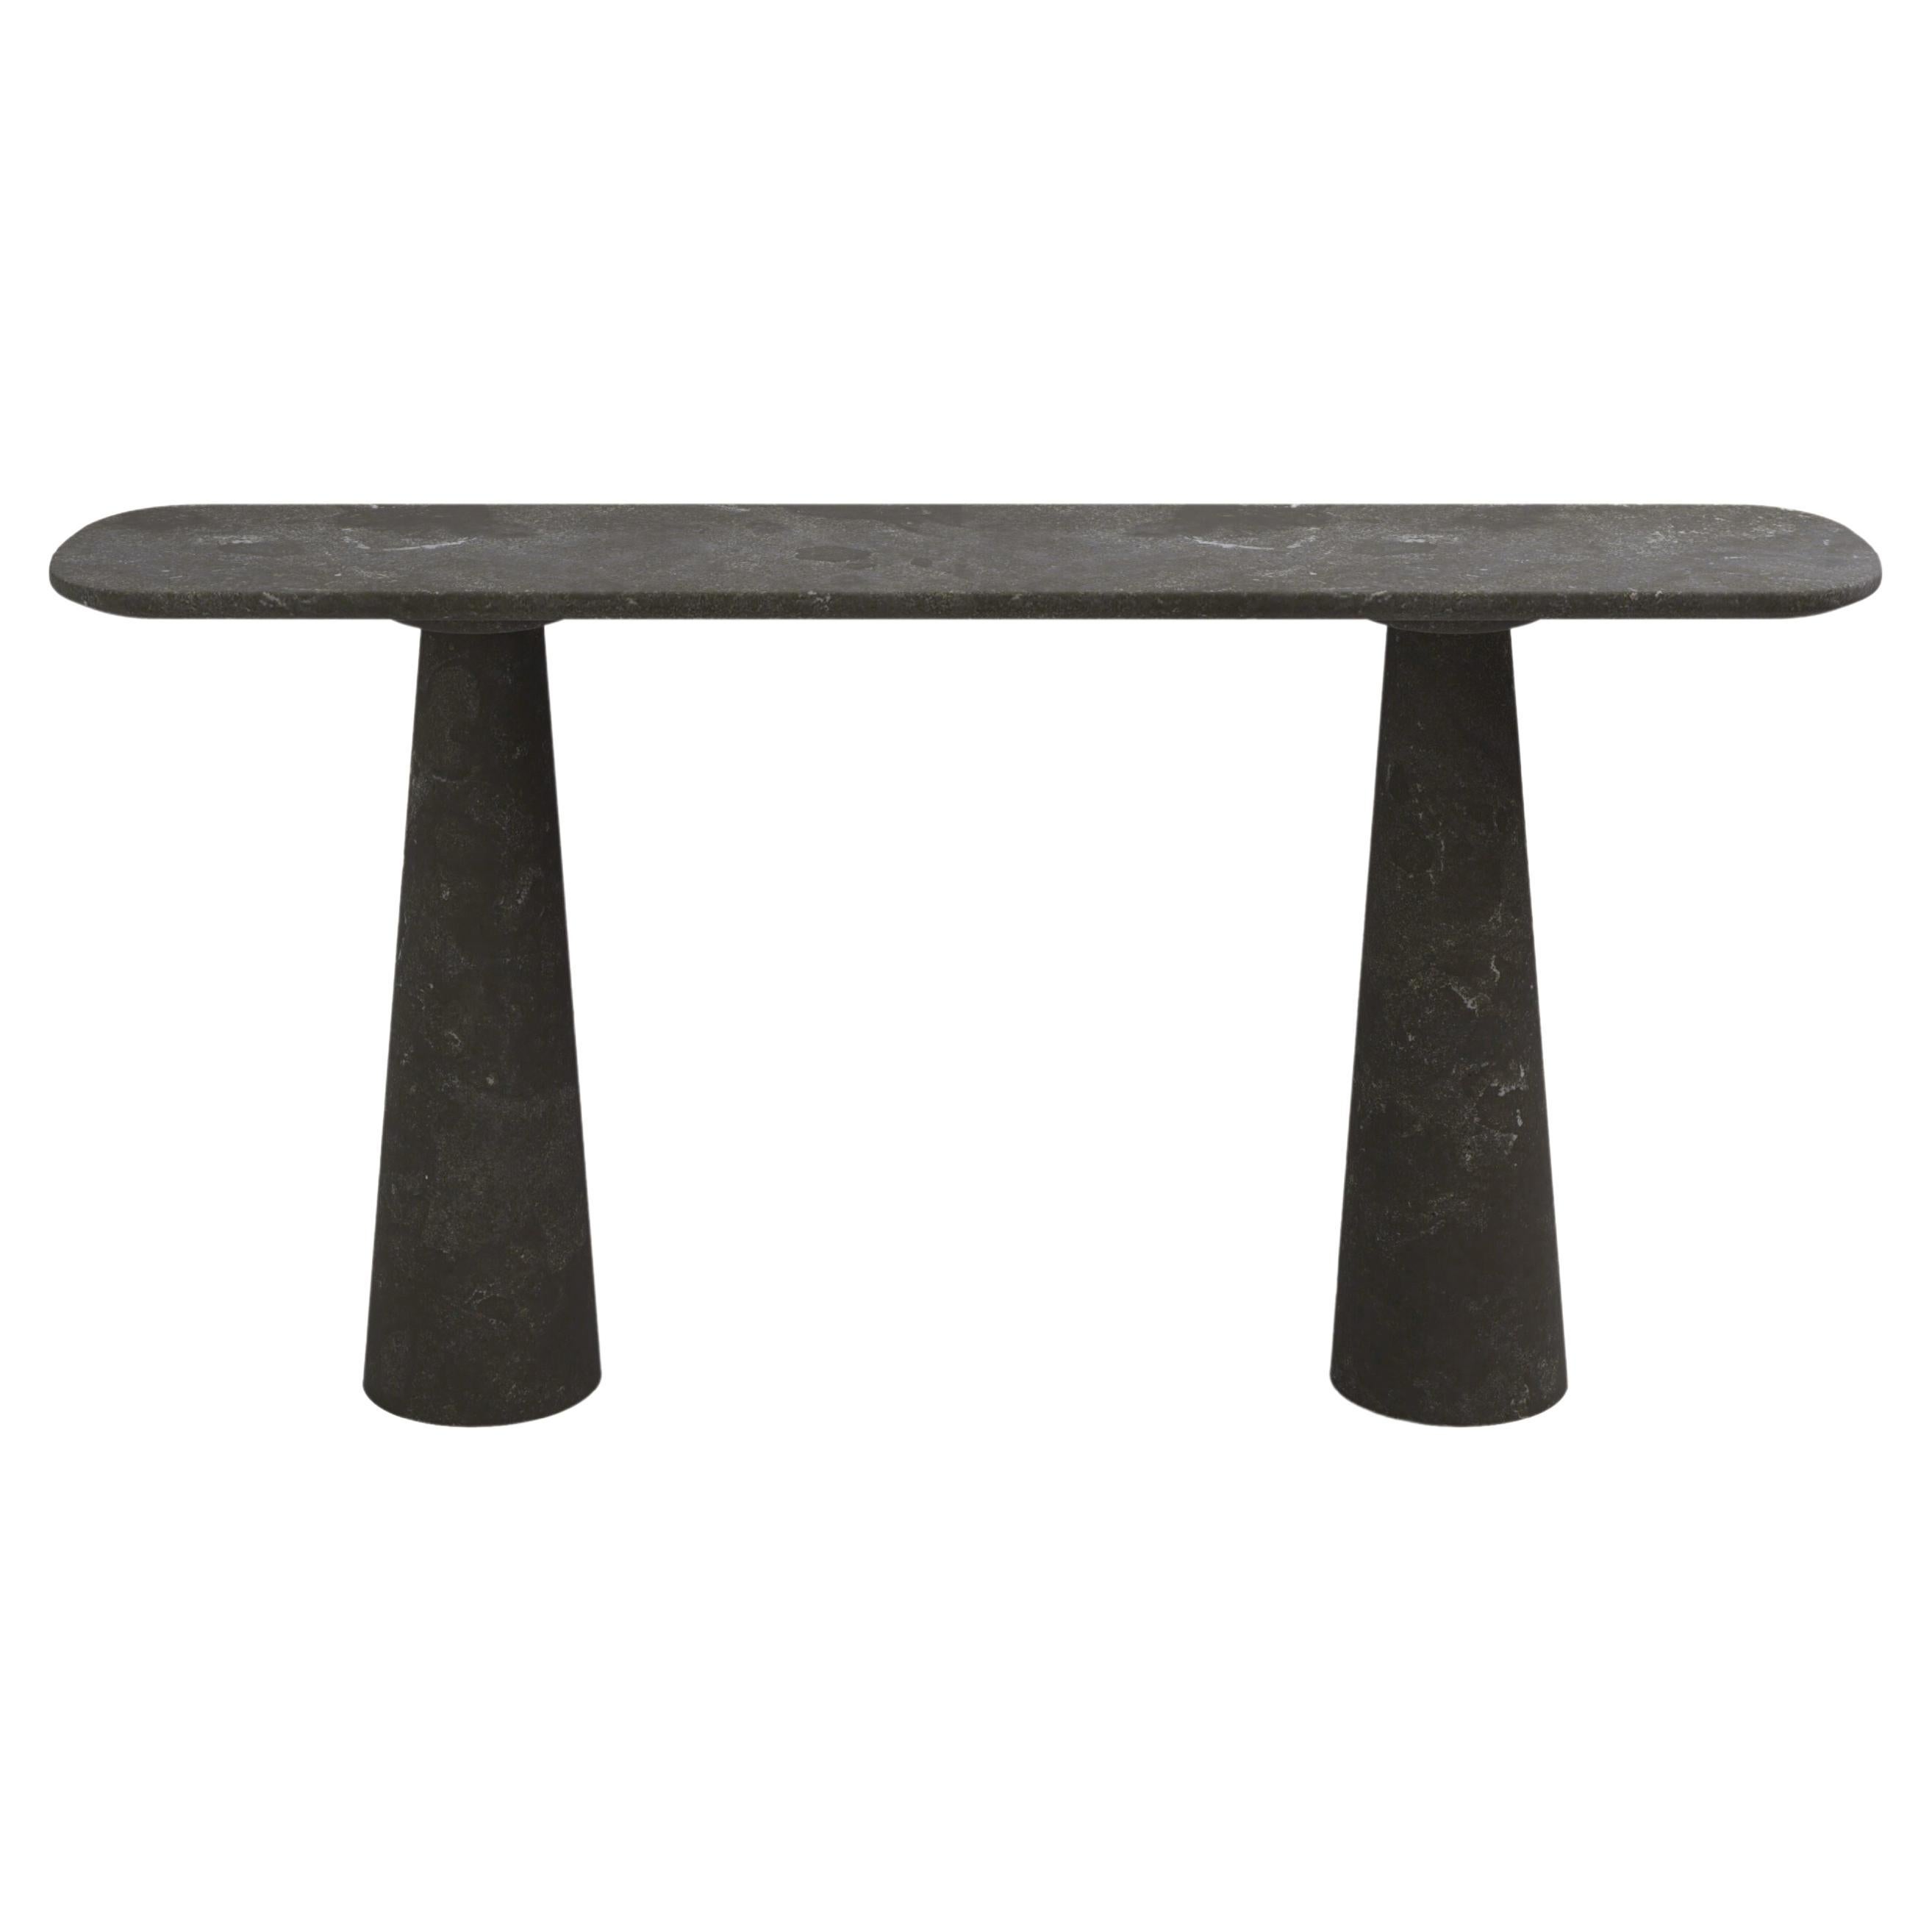 FORM(LA) Table console Cono 60L x 15W x 33H Nero Petite Granite